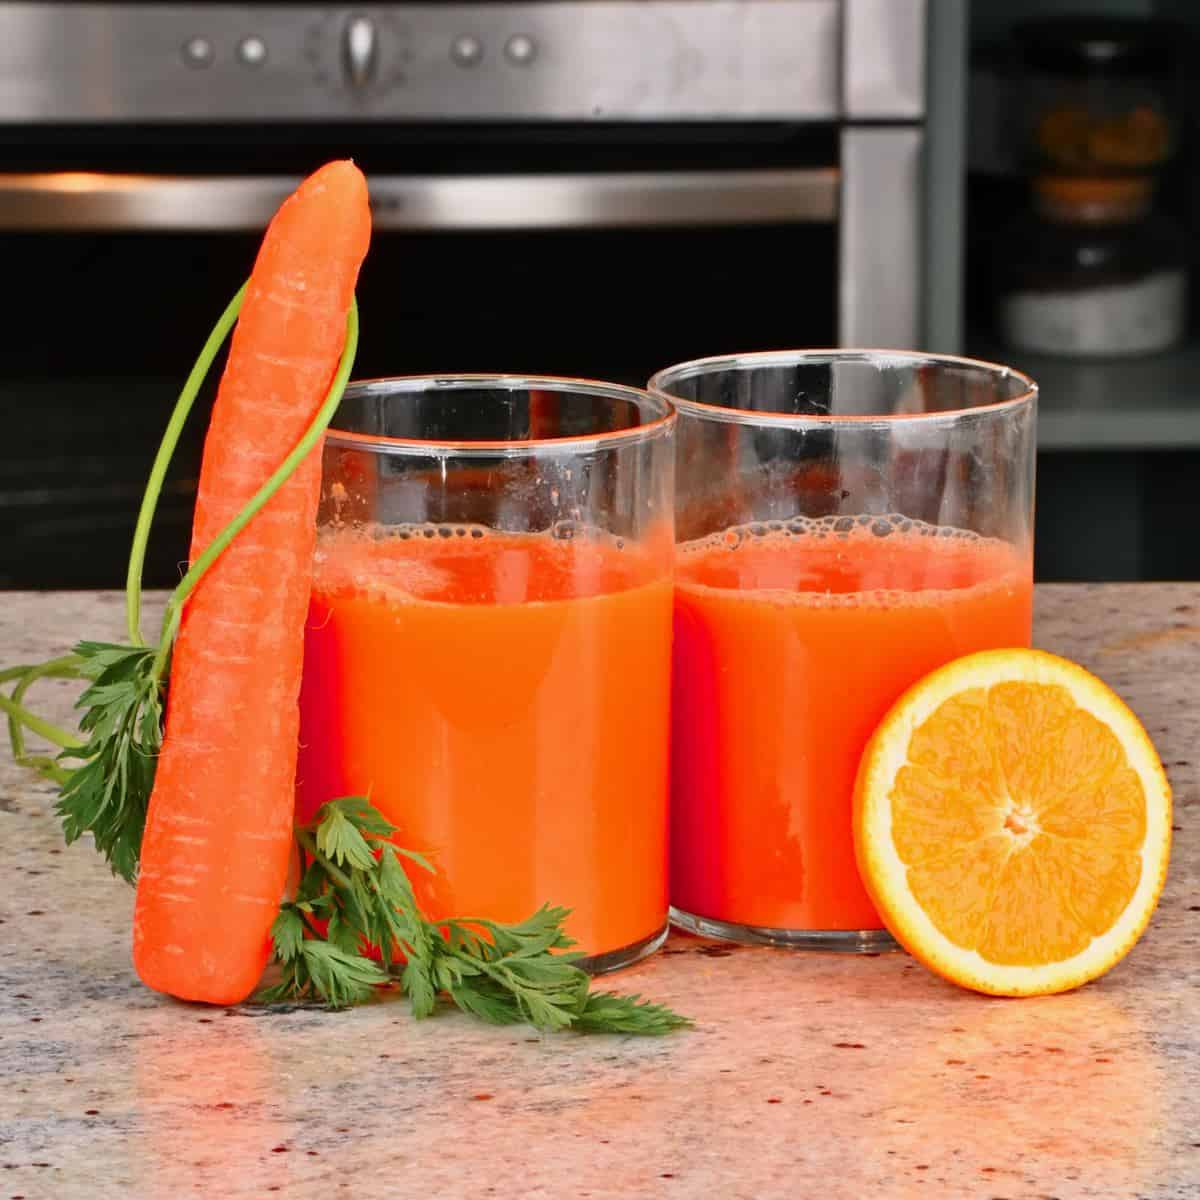 https://www.alphafoodie.com/wp-content/uploads/2020/11/Orange-Carrot-Juice-1-of-1.jpeg